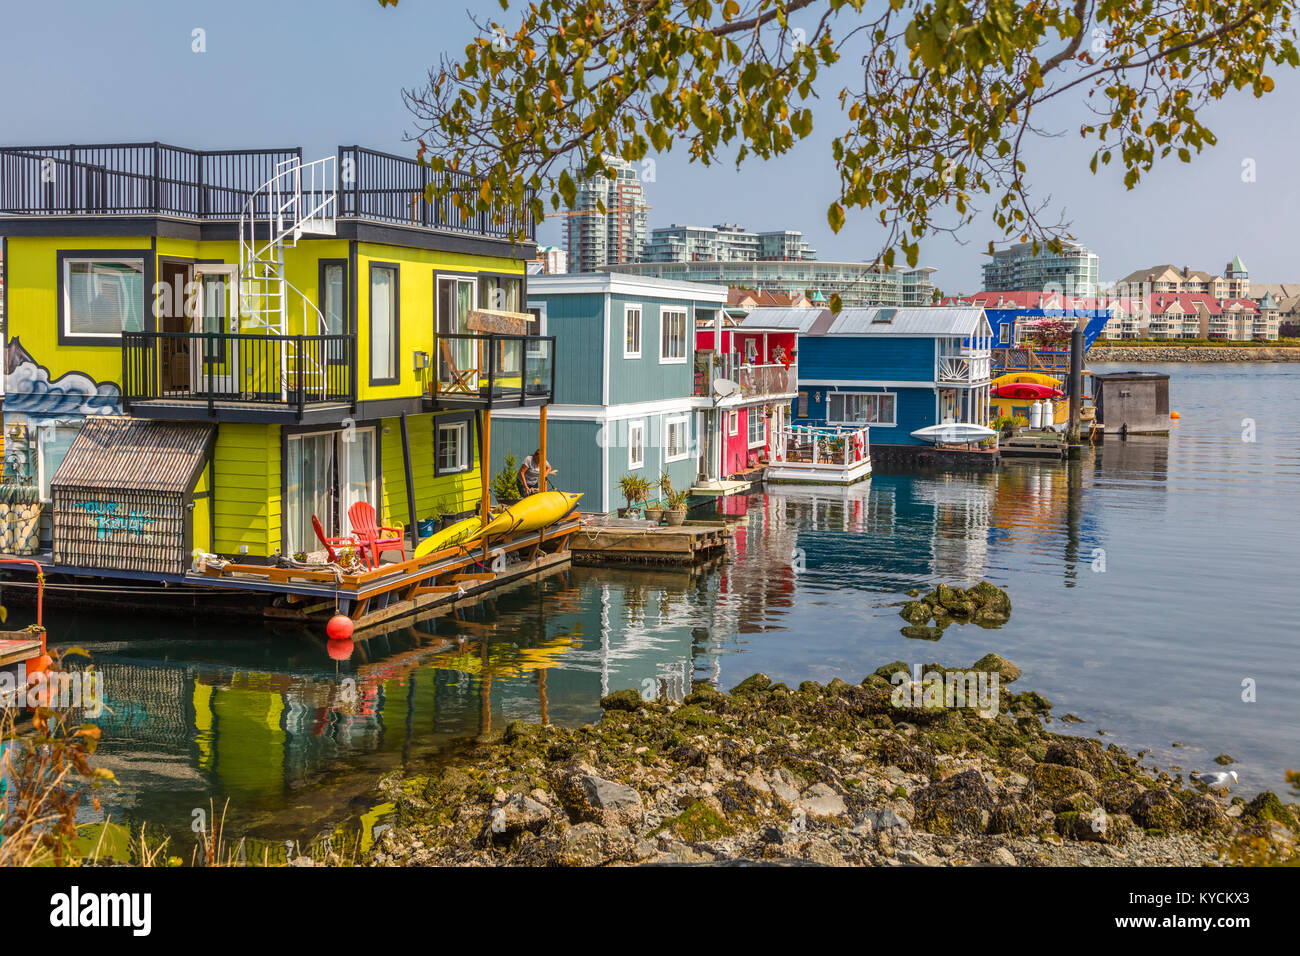 Fisherman's Wharf en Victoria, Canadá, una atracción turística con quioscos de comida, tiendas y hogares de flotación o houseboats Foto de stock